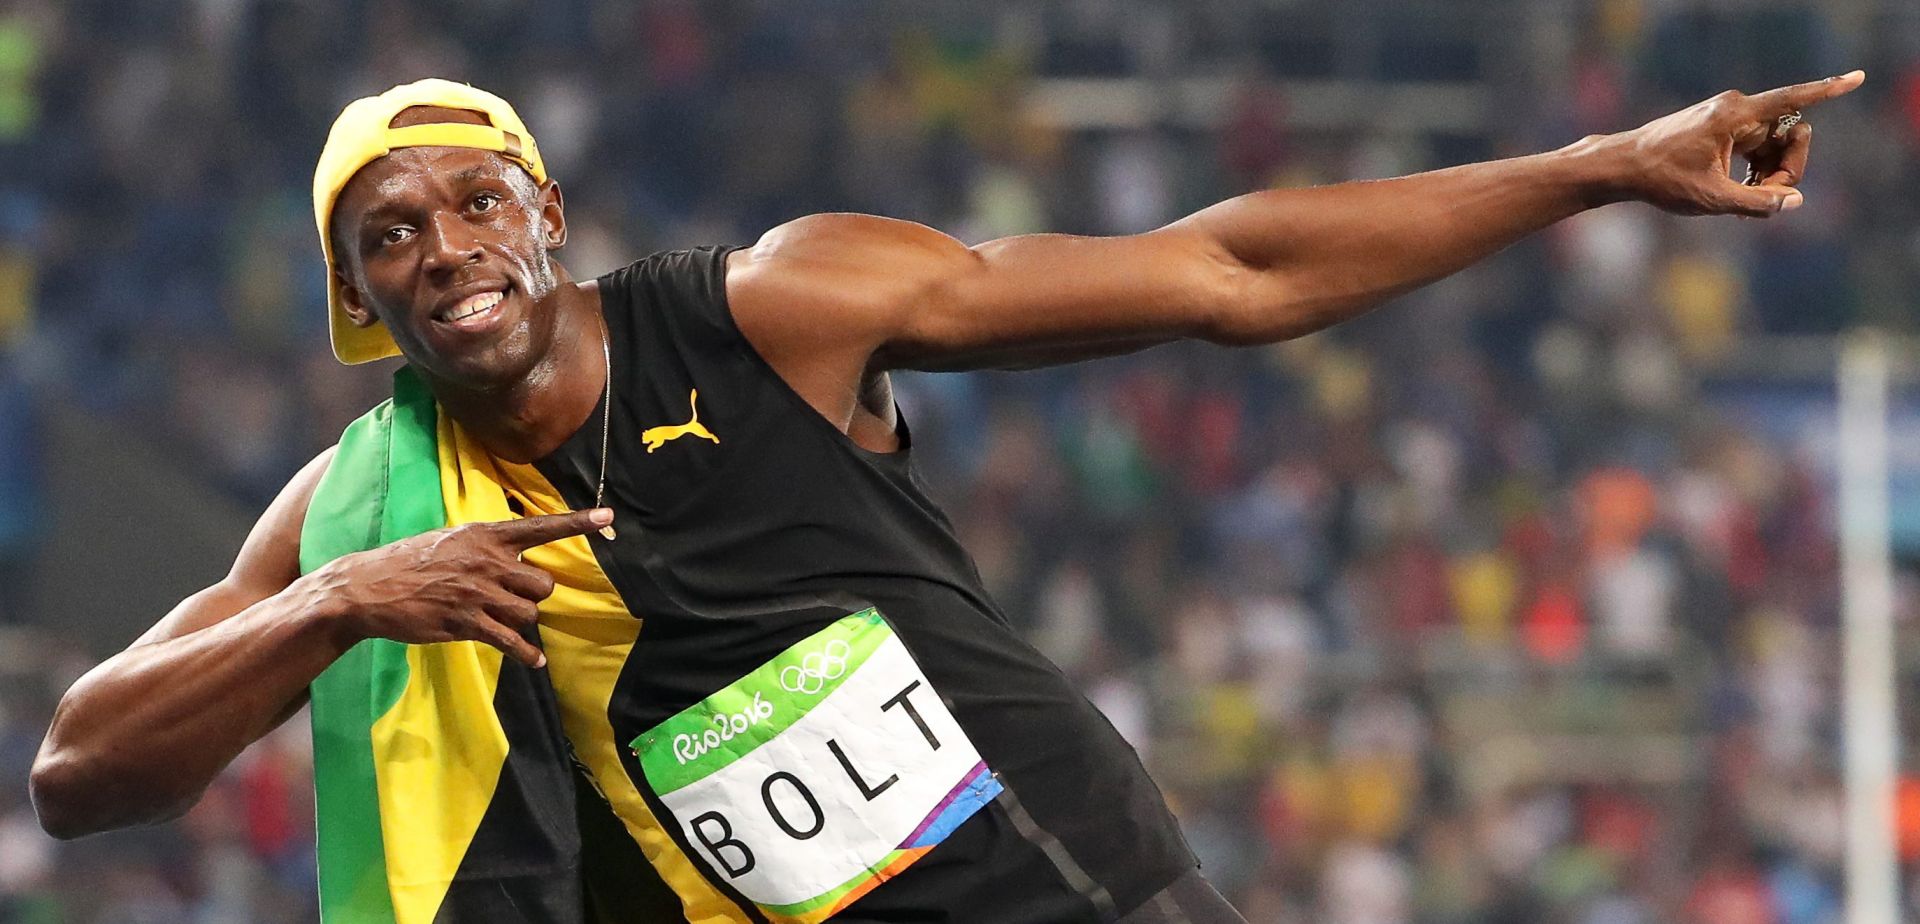 VIDEO: OI ATLETIKA Treće zlato za Usaina Bolta na 100m